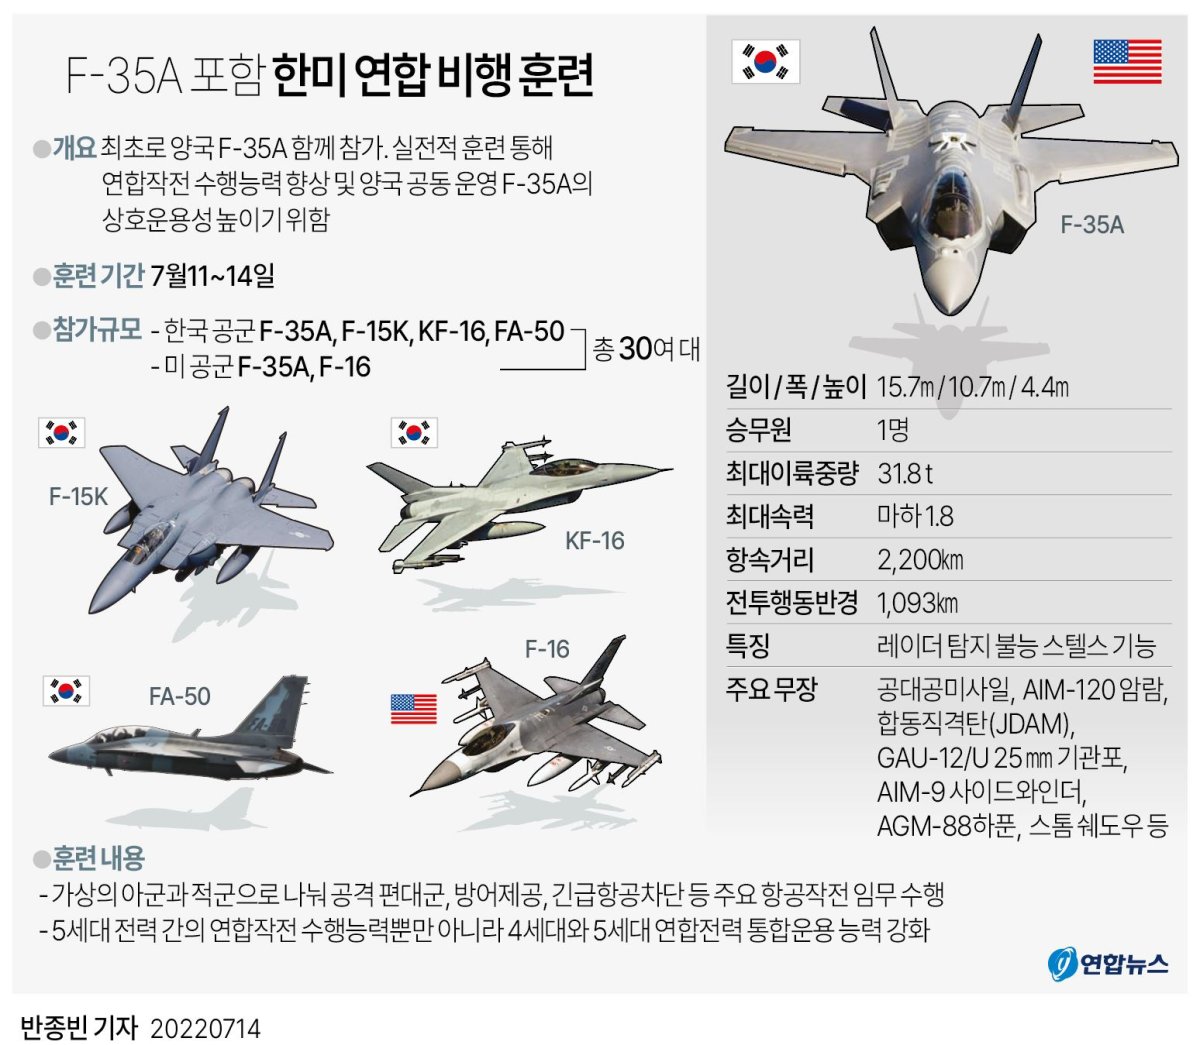 [그래픽] F-35A 포함 한미 연합 비행 훈련 개요